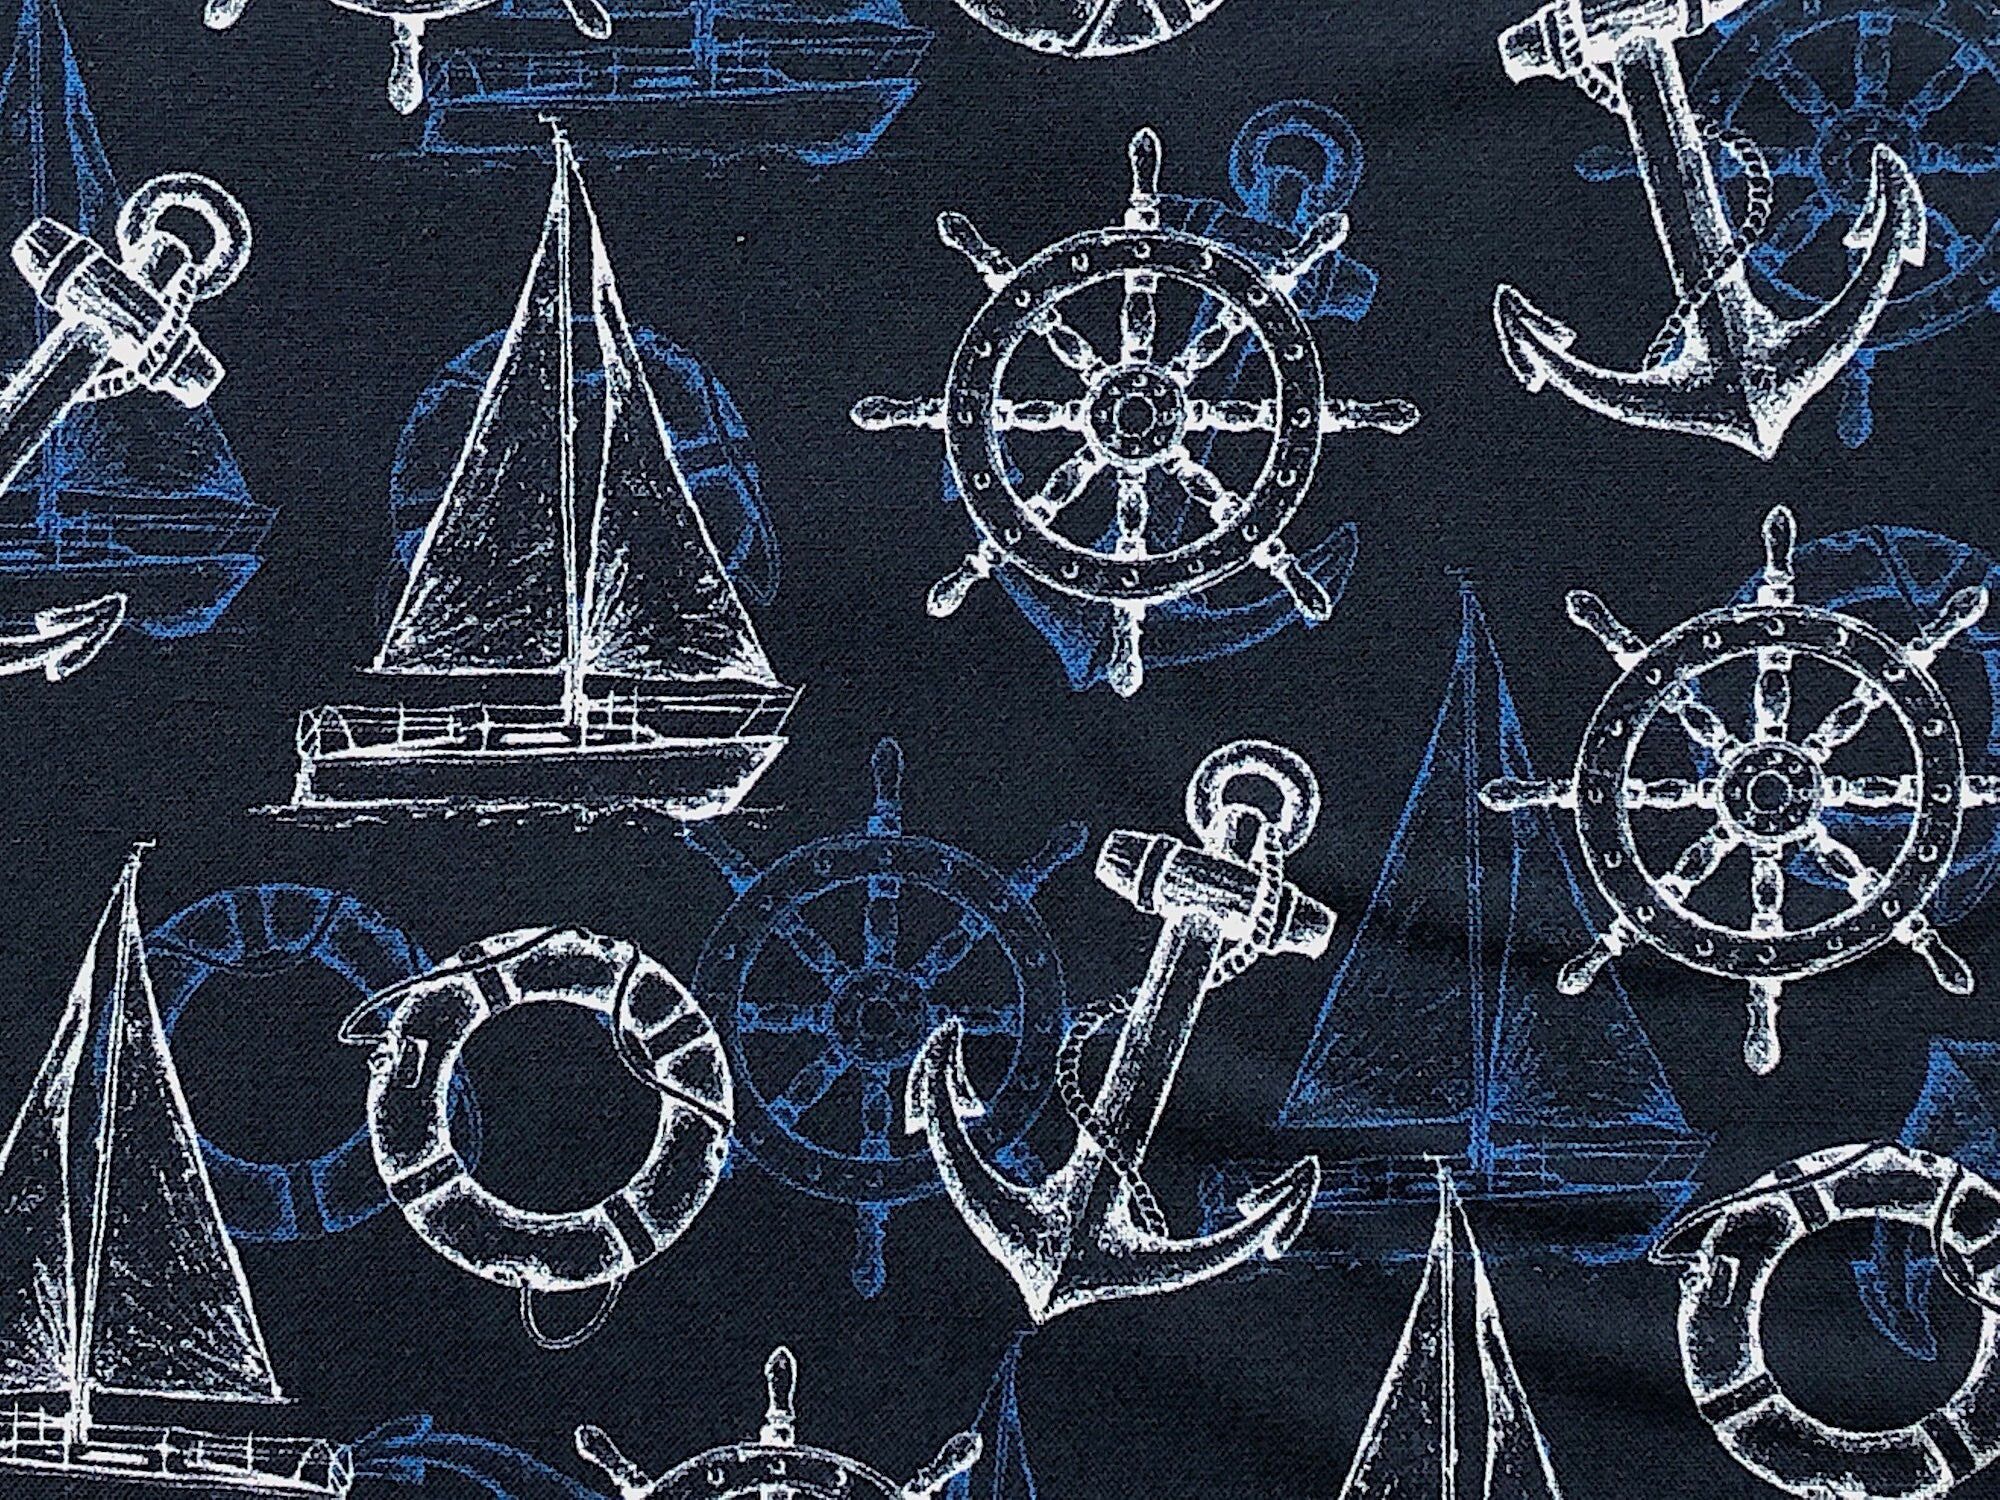 Close up of sailboat, ships wheel and anchors.